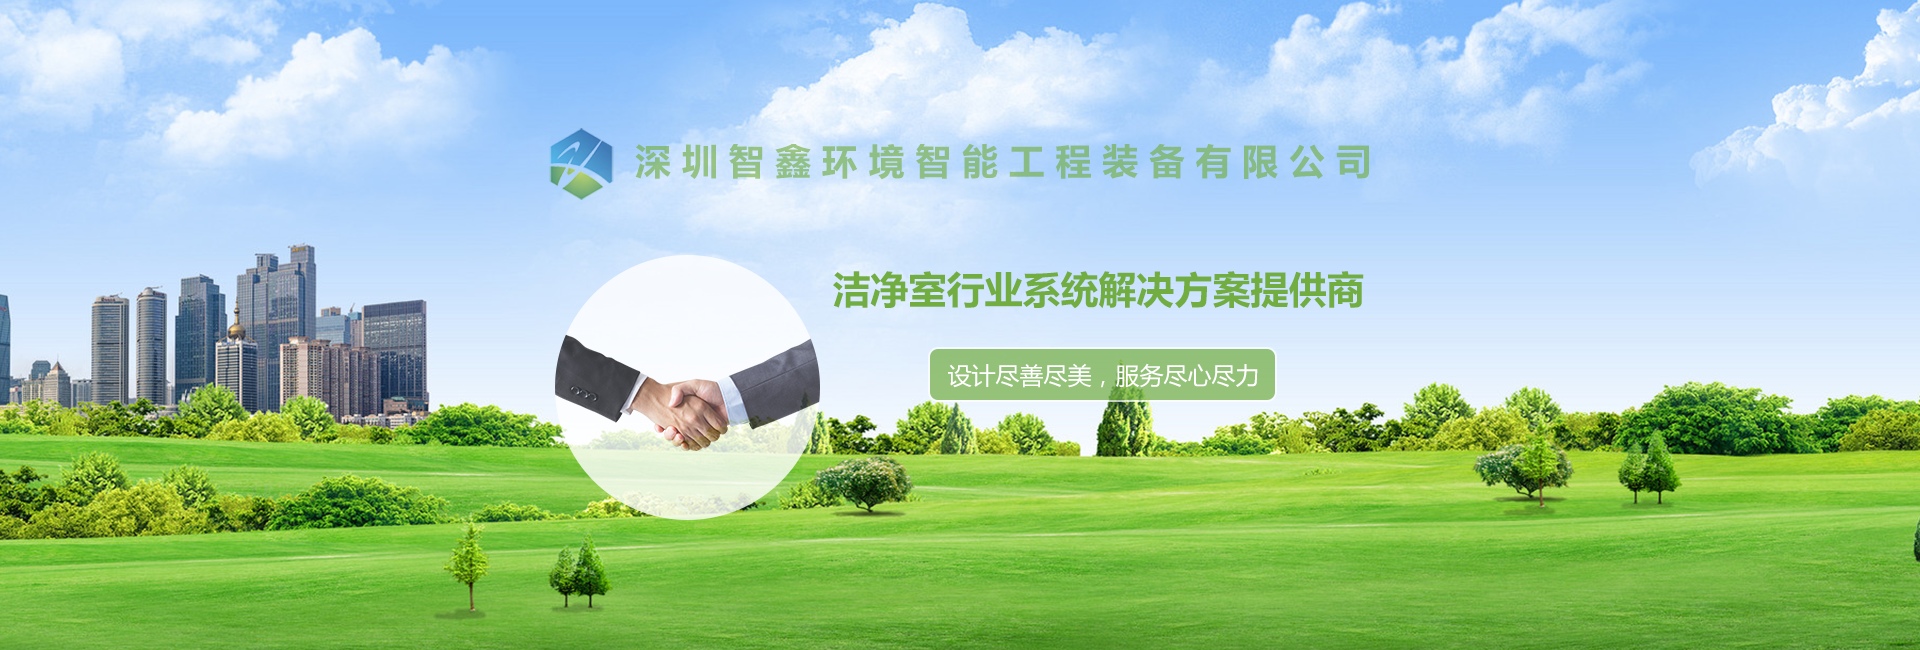 深圳智鑫環境智能工程裝備有限公司與我司簽訂網站建設協議